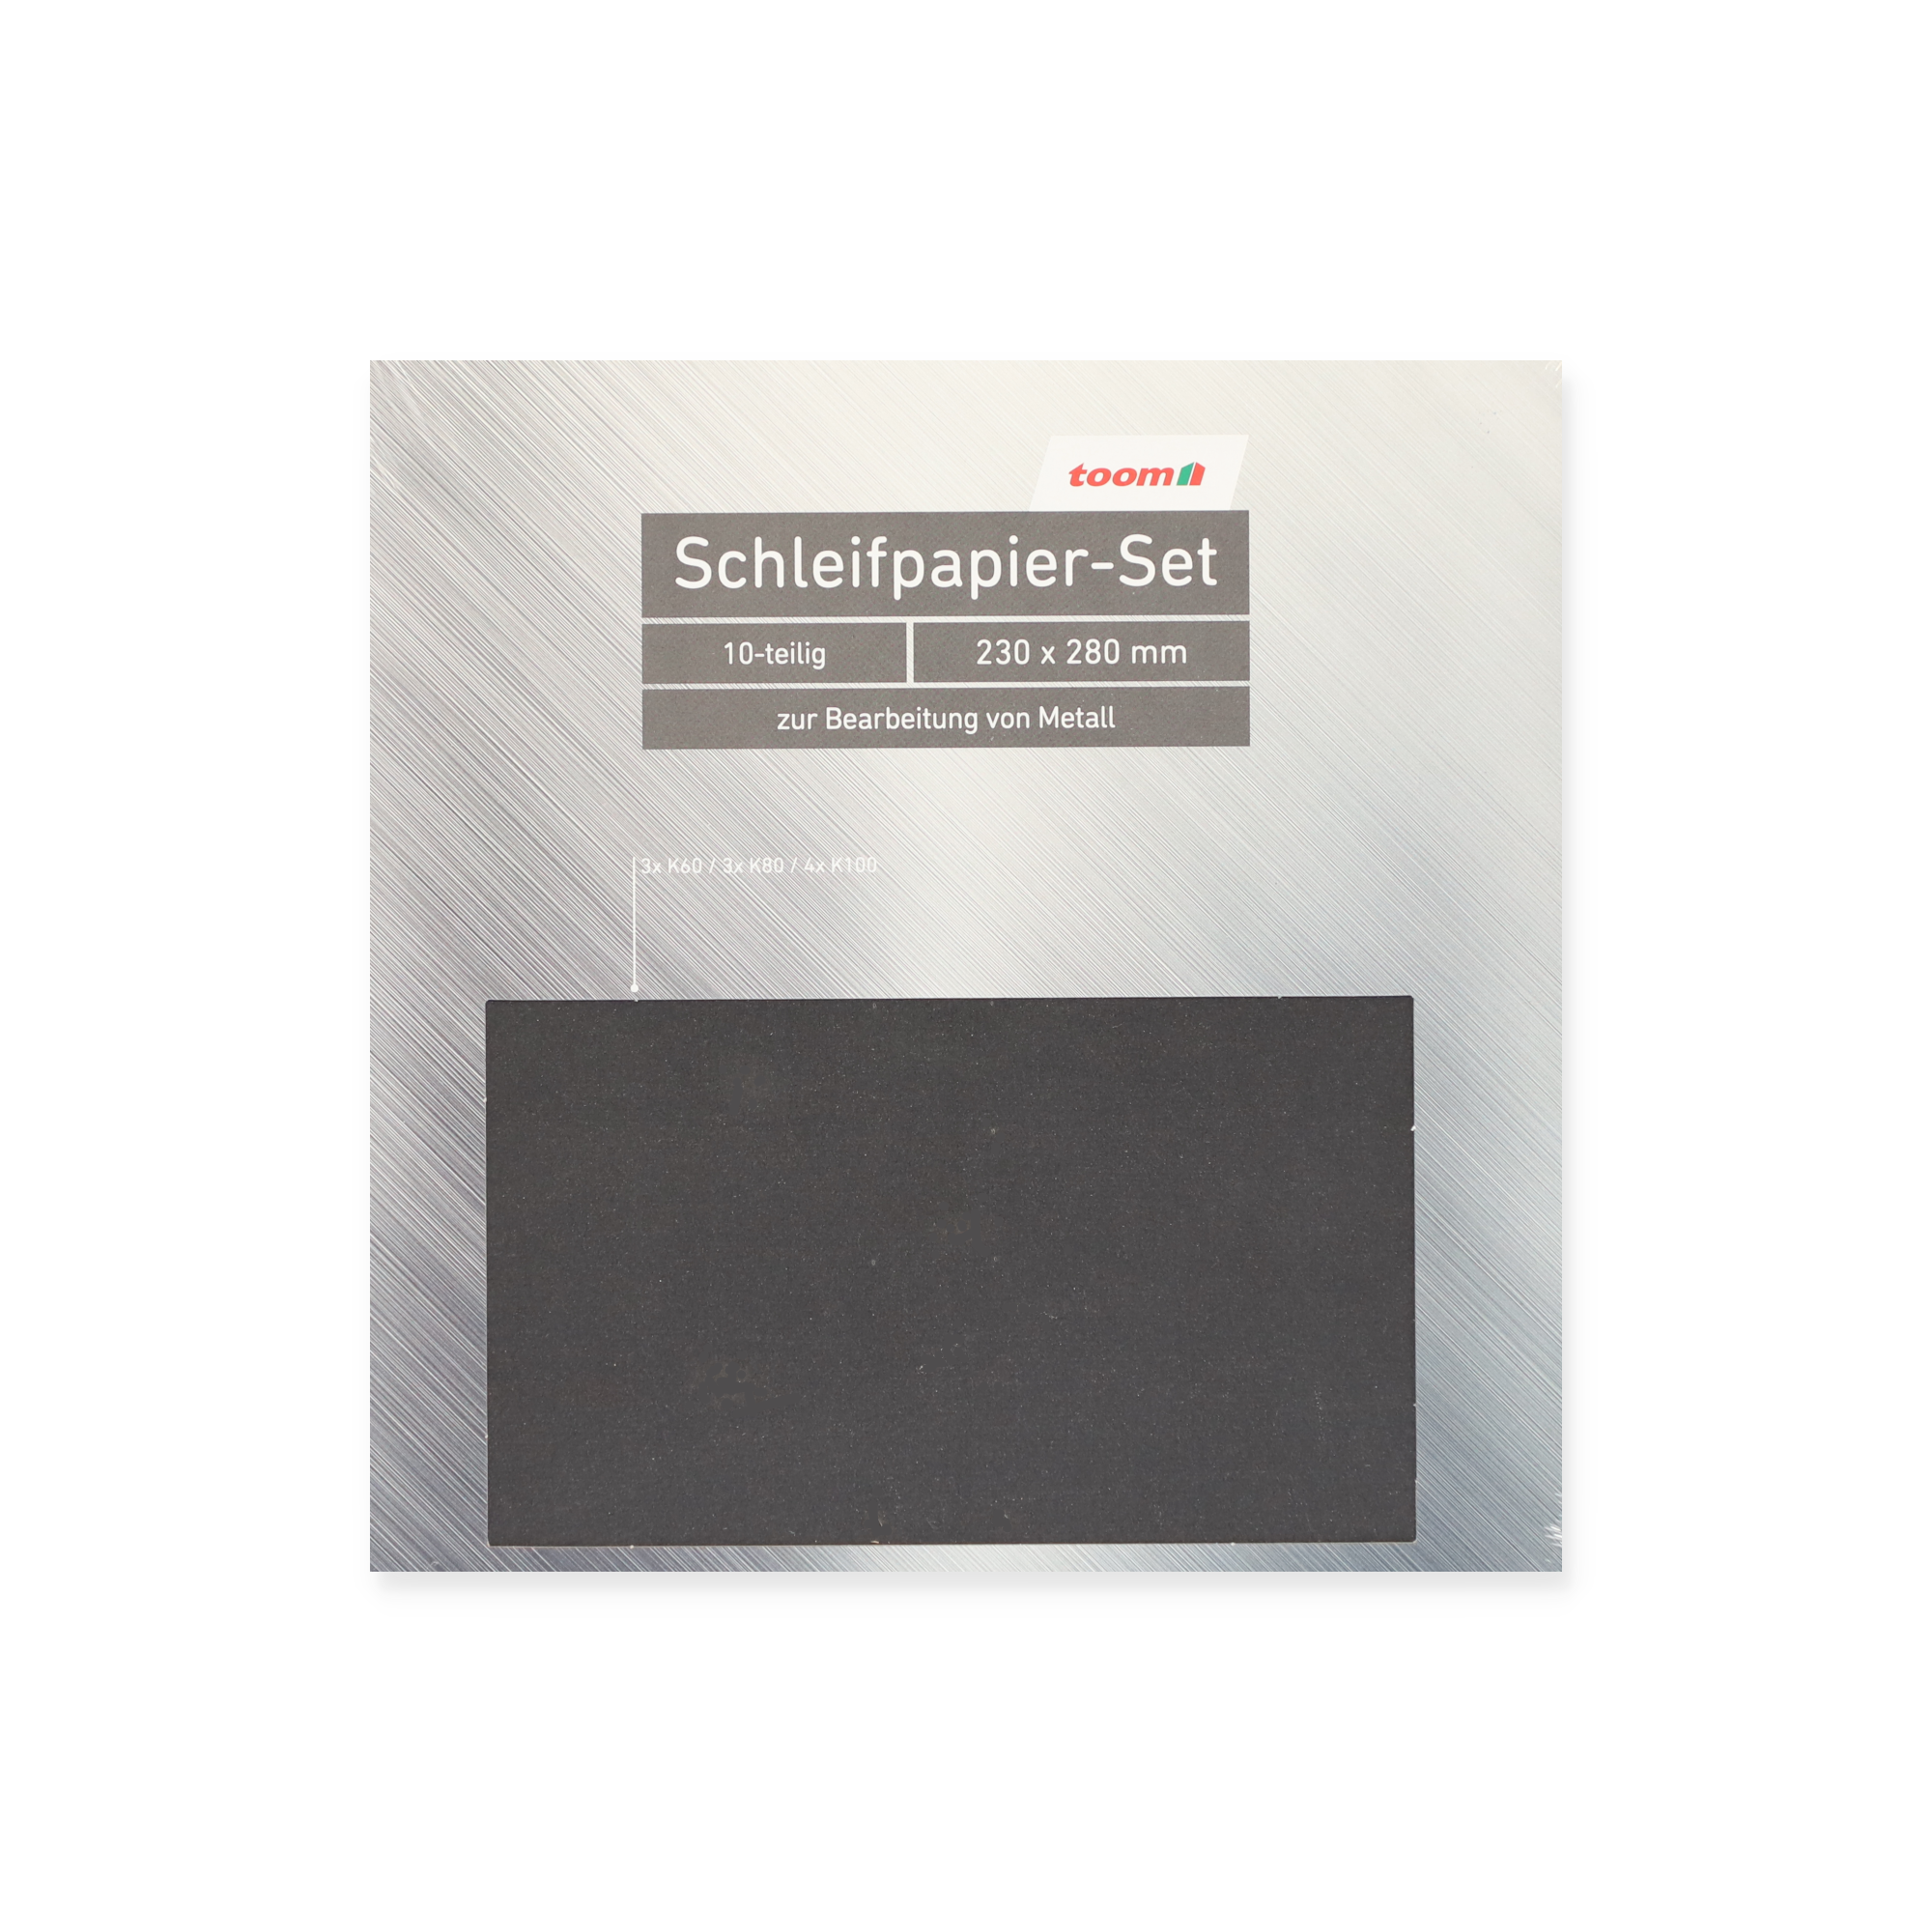 Schleifpapier-Set für Metall 23 x 28 cm 10-teilig + product picture